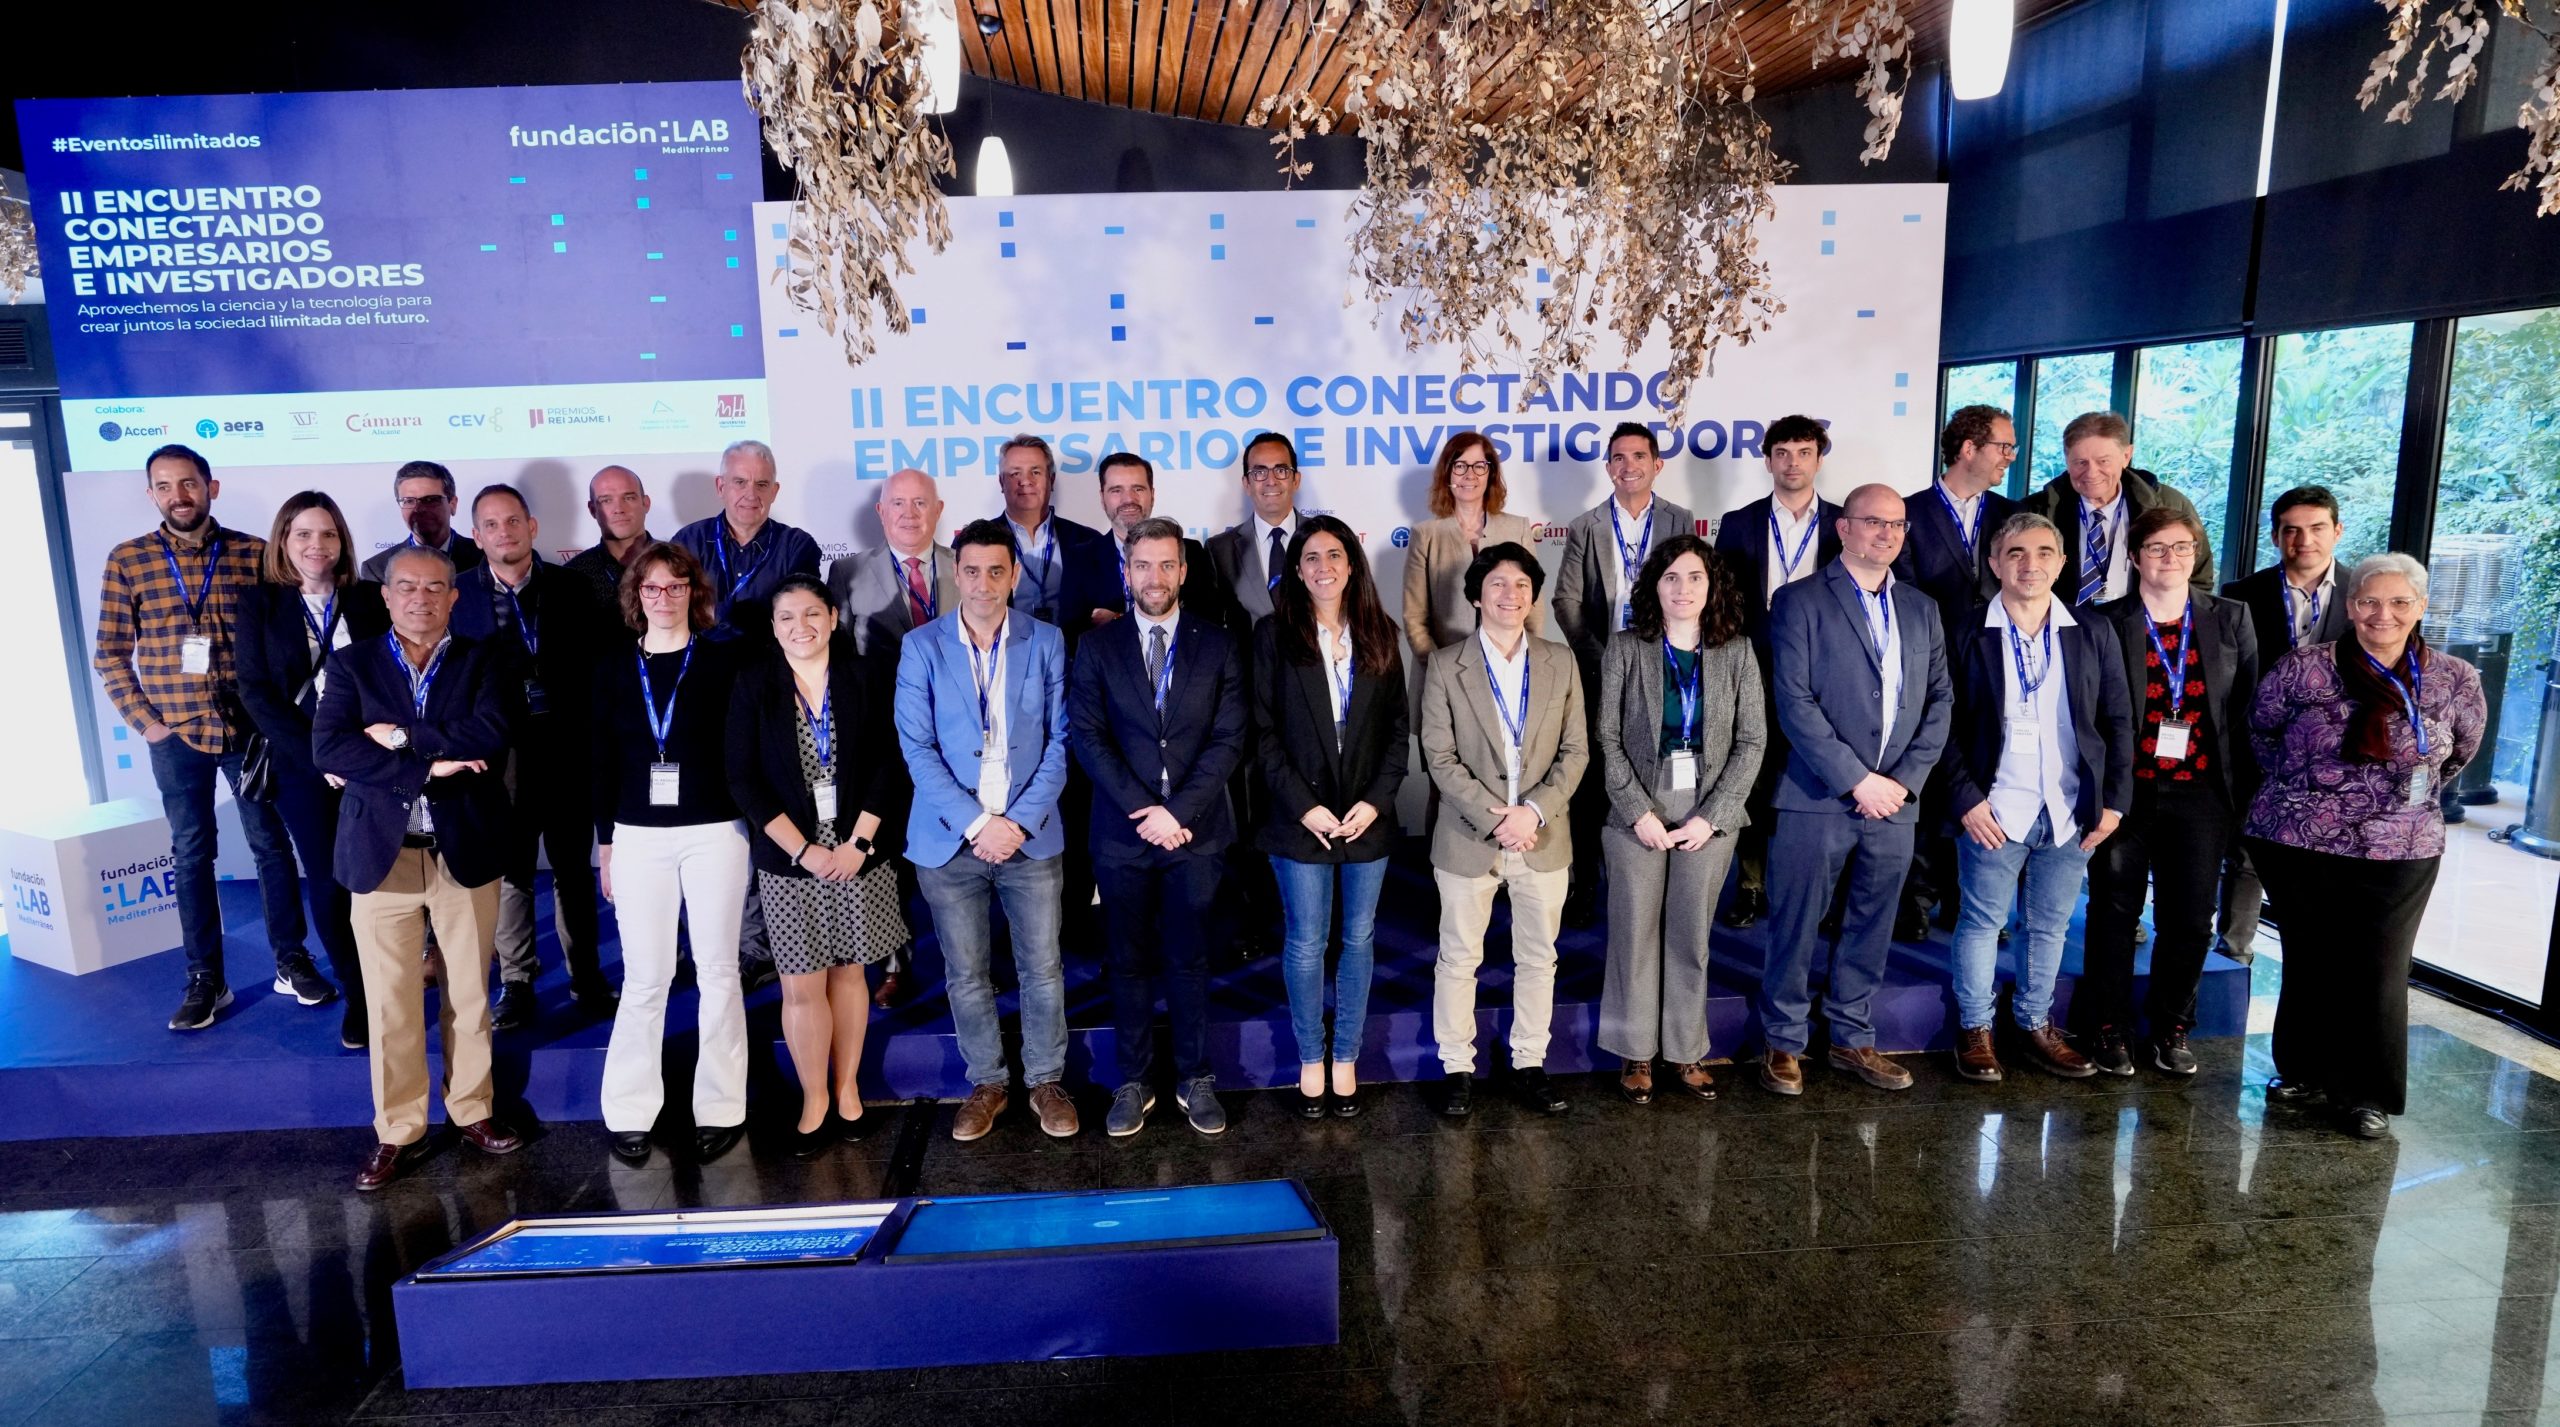 Fundación LAB Mediterráneo, AccenT, UA, UMH, AEFA, AVE, Cámara Alicante, CEV y FPRJI fomentan la colaboración entre empresarios e investigadores para promover la innovación